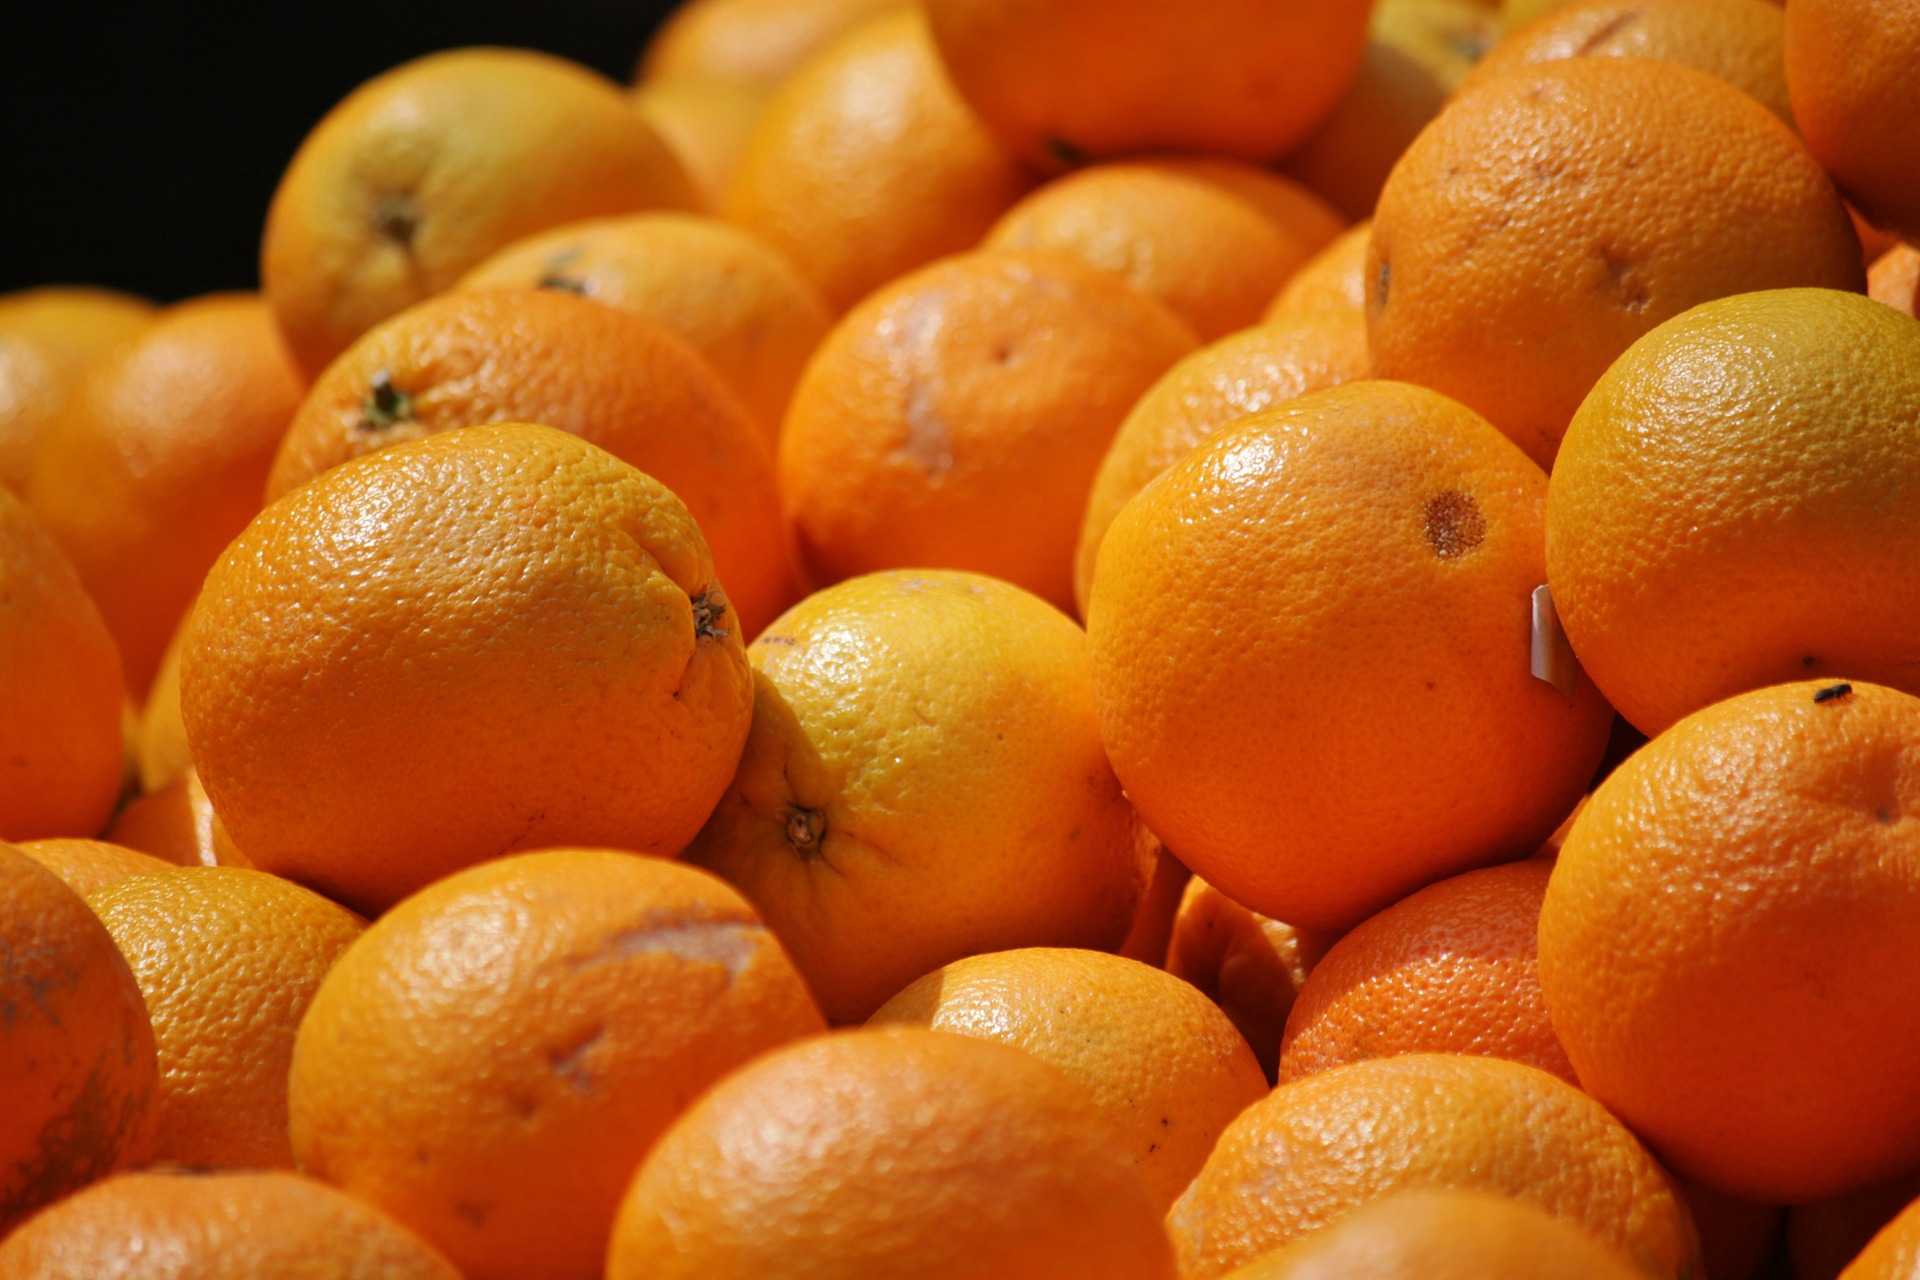 Эксперты зафиксировали резкое падение цен на апельсины в Узбекистане